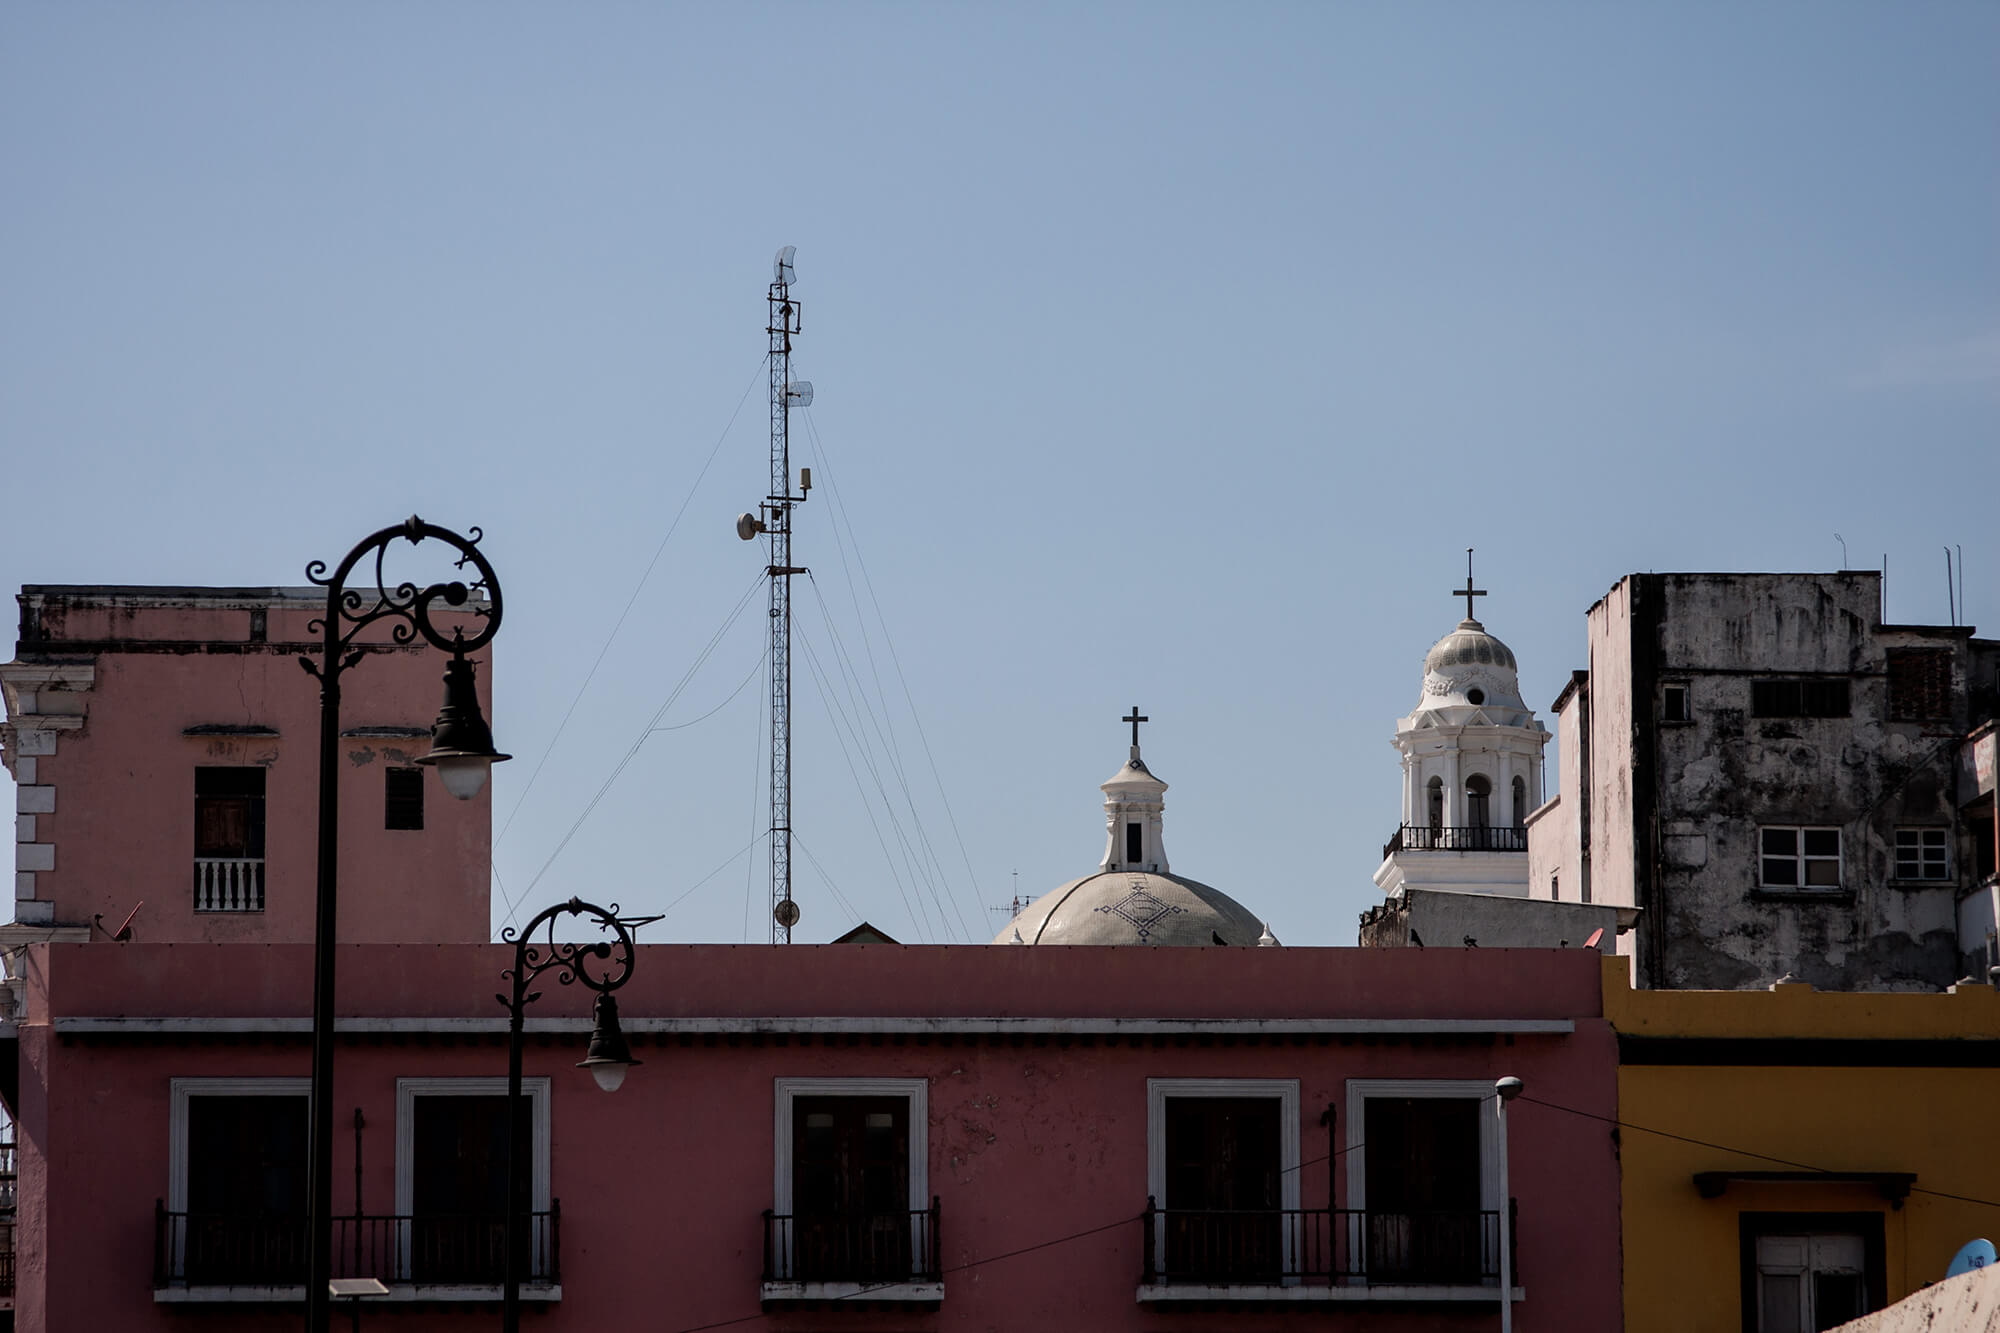 Tejados coloniales en la ciudad mexicana de Veracruz